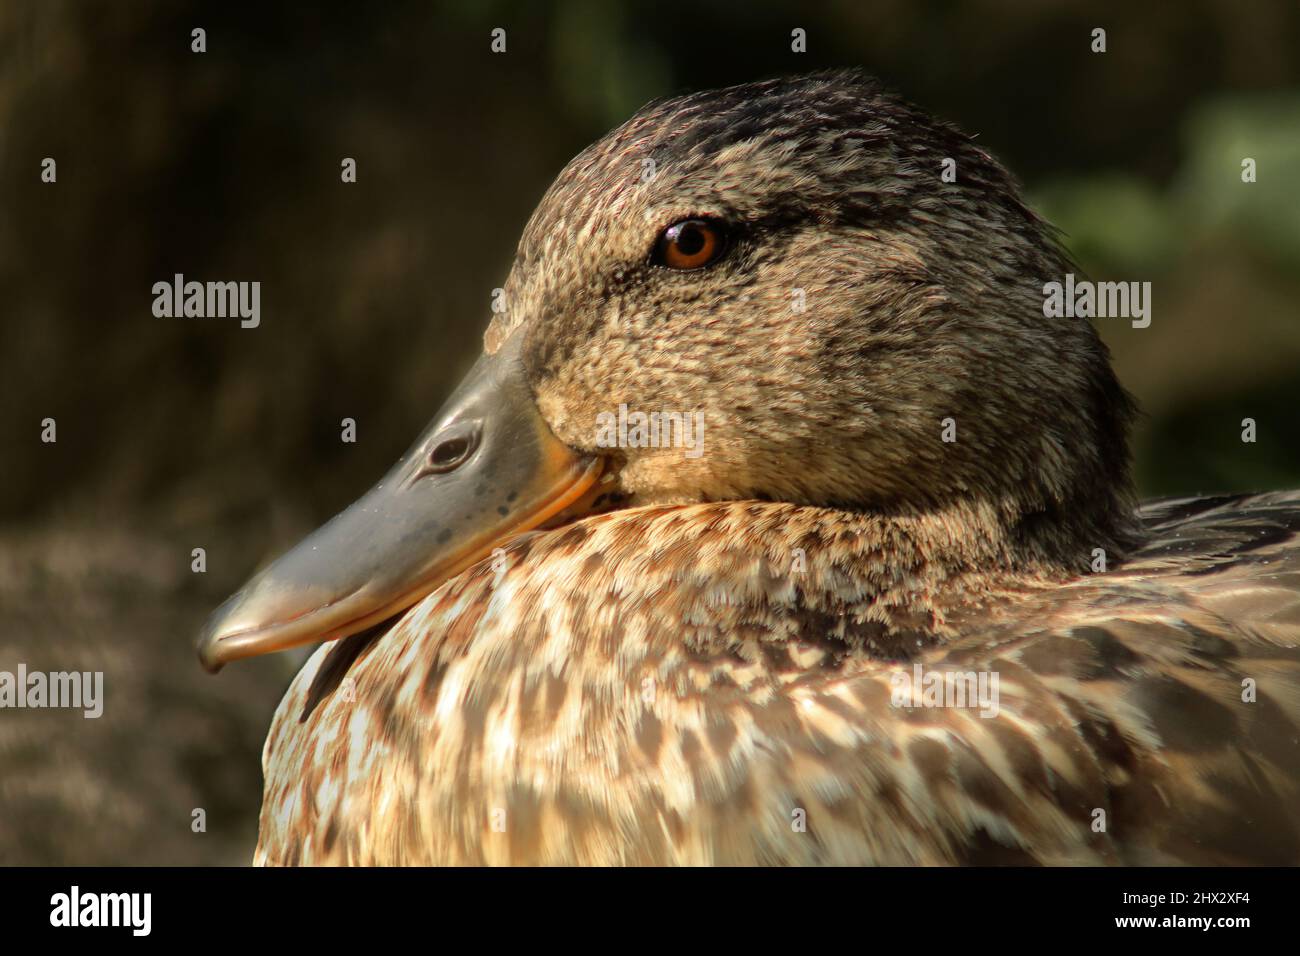 Eine Ente, die am Ufer eines voit, die sonne genießt Banque D'Images